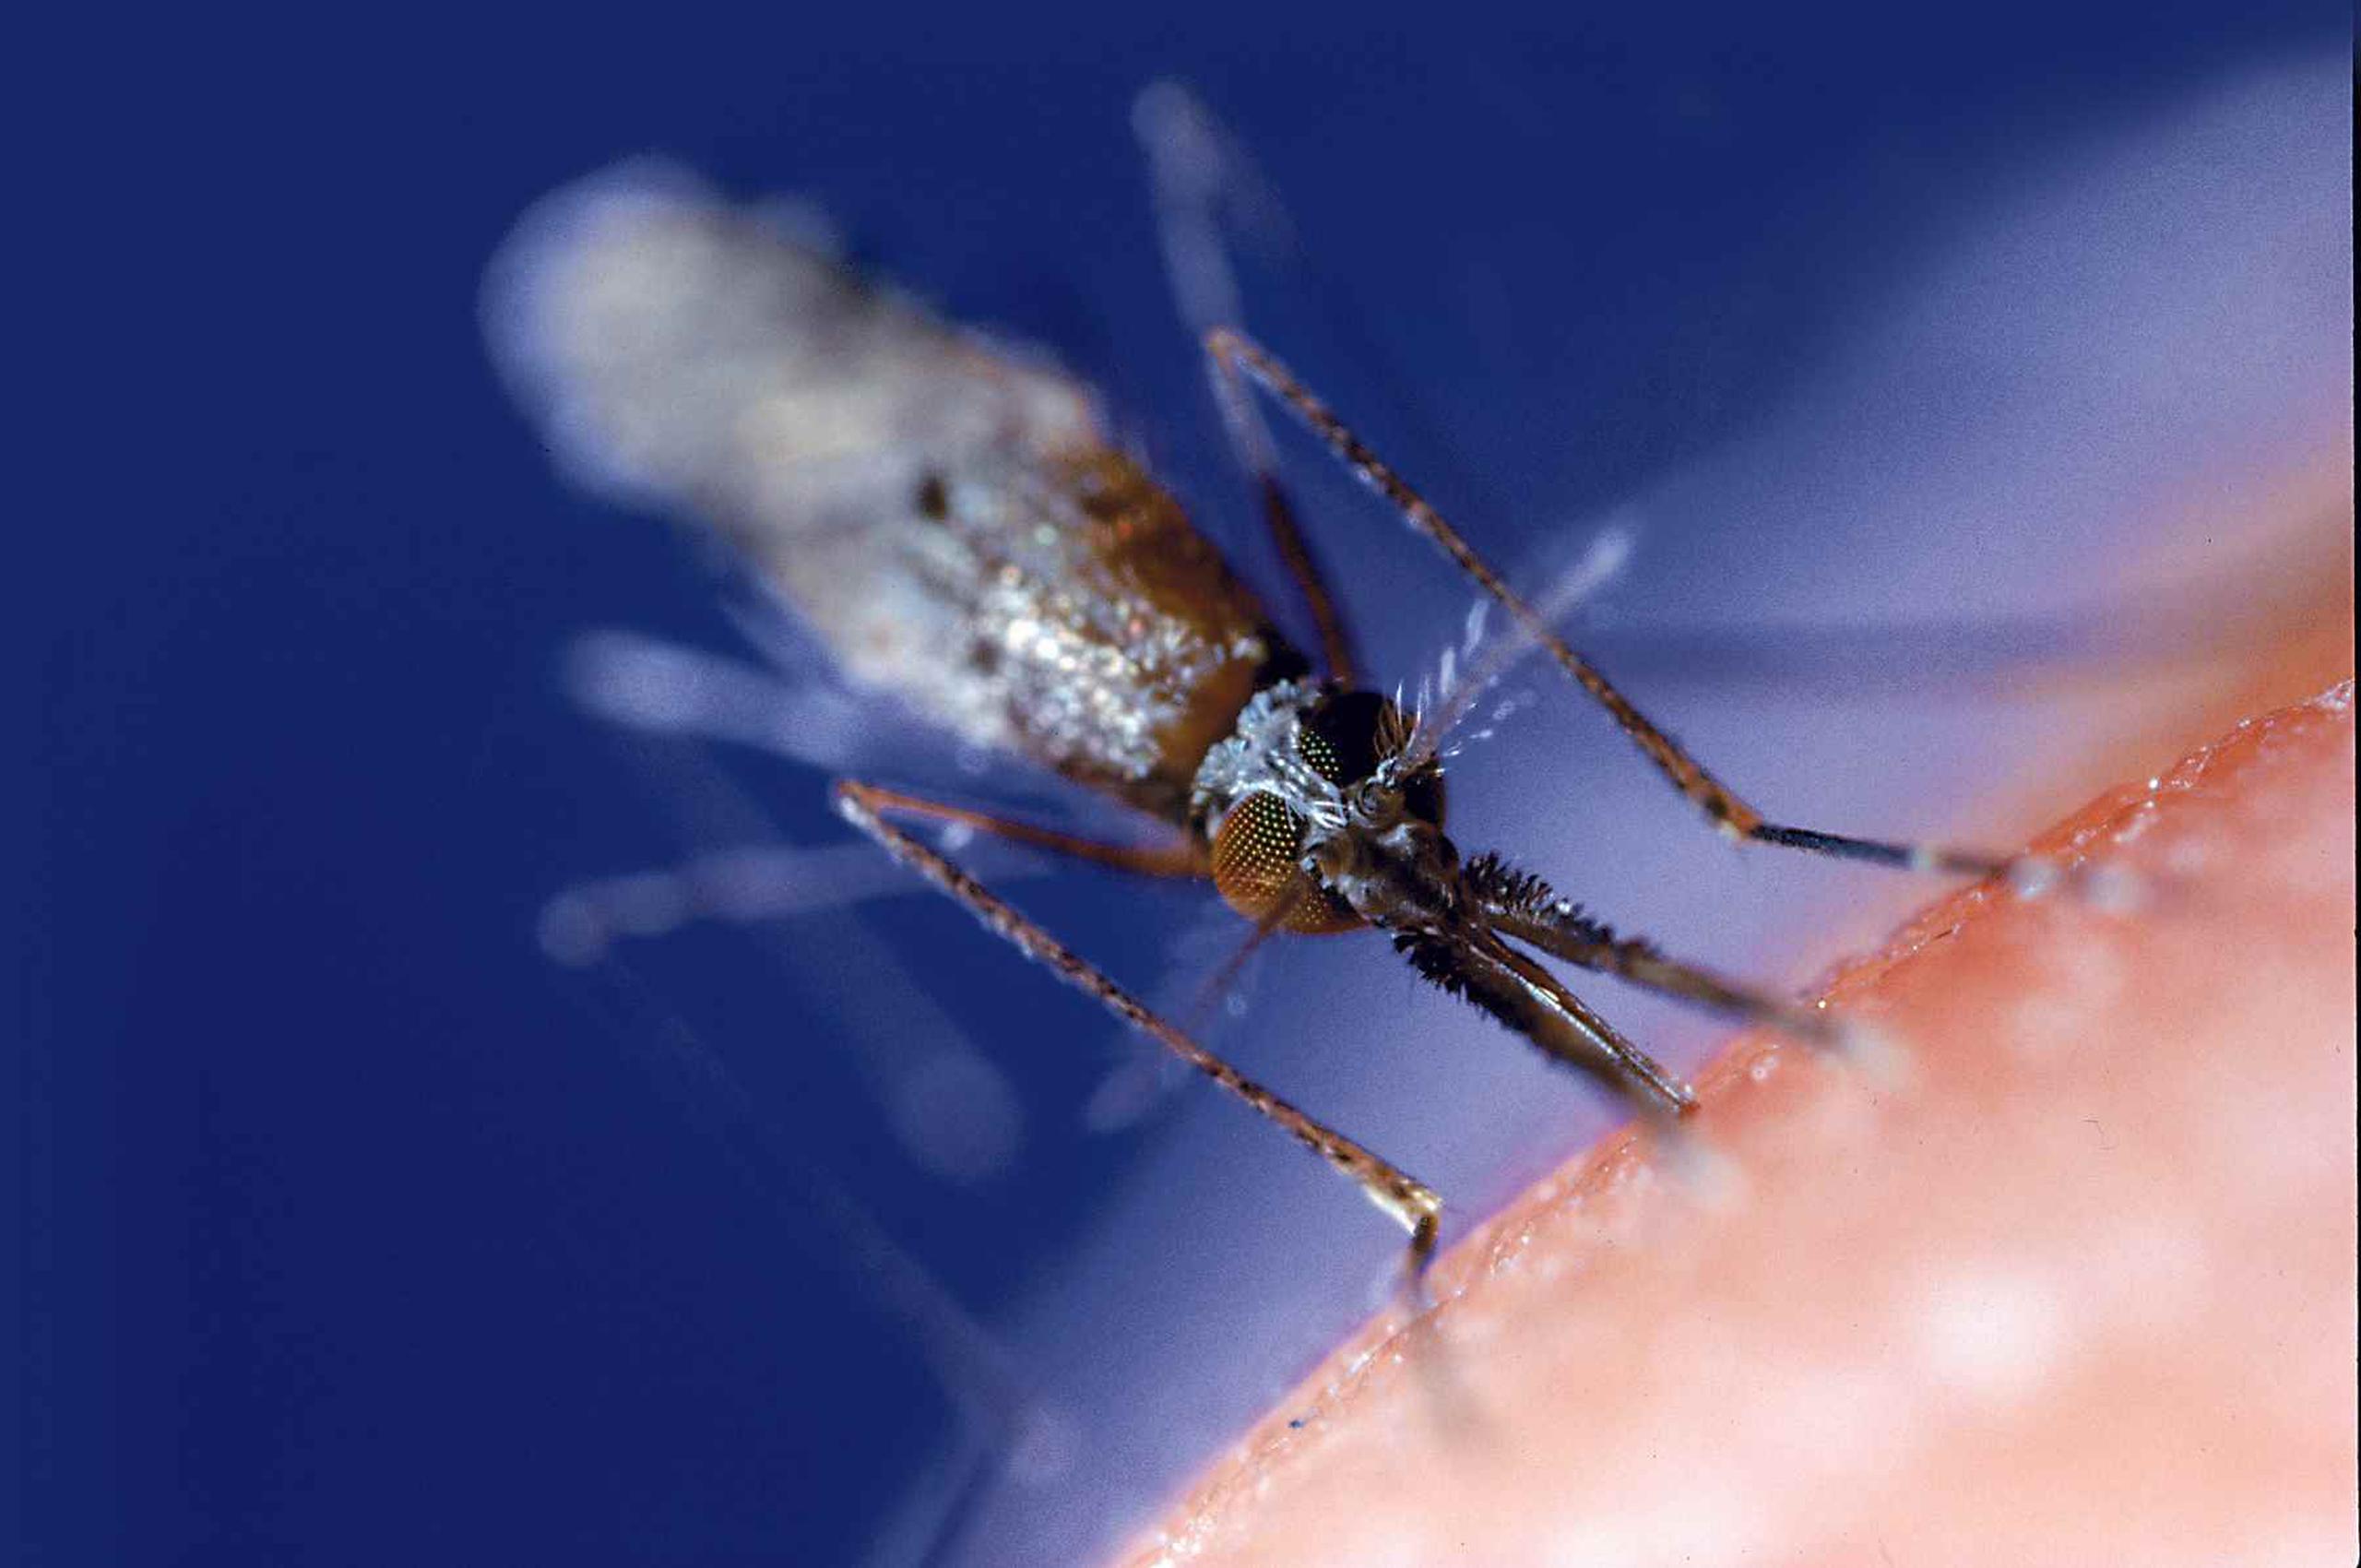 La malaria, transmitida por mosquitos, mata a medio millón de personas por año, sobre todo en África, a pesar de las campañas para controlarlo. (GFR Media)